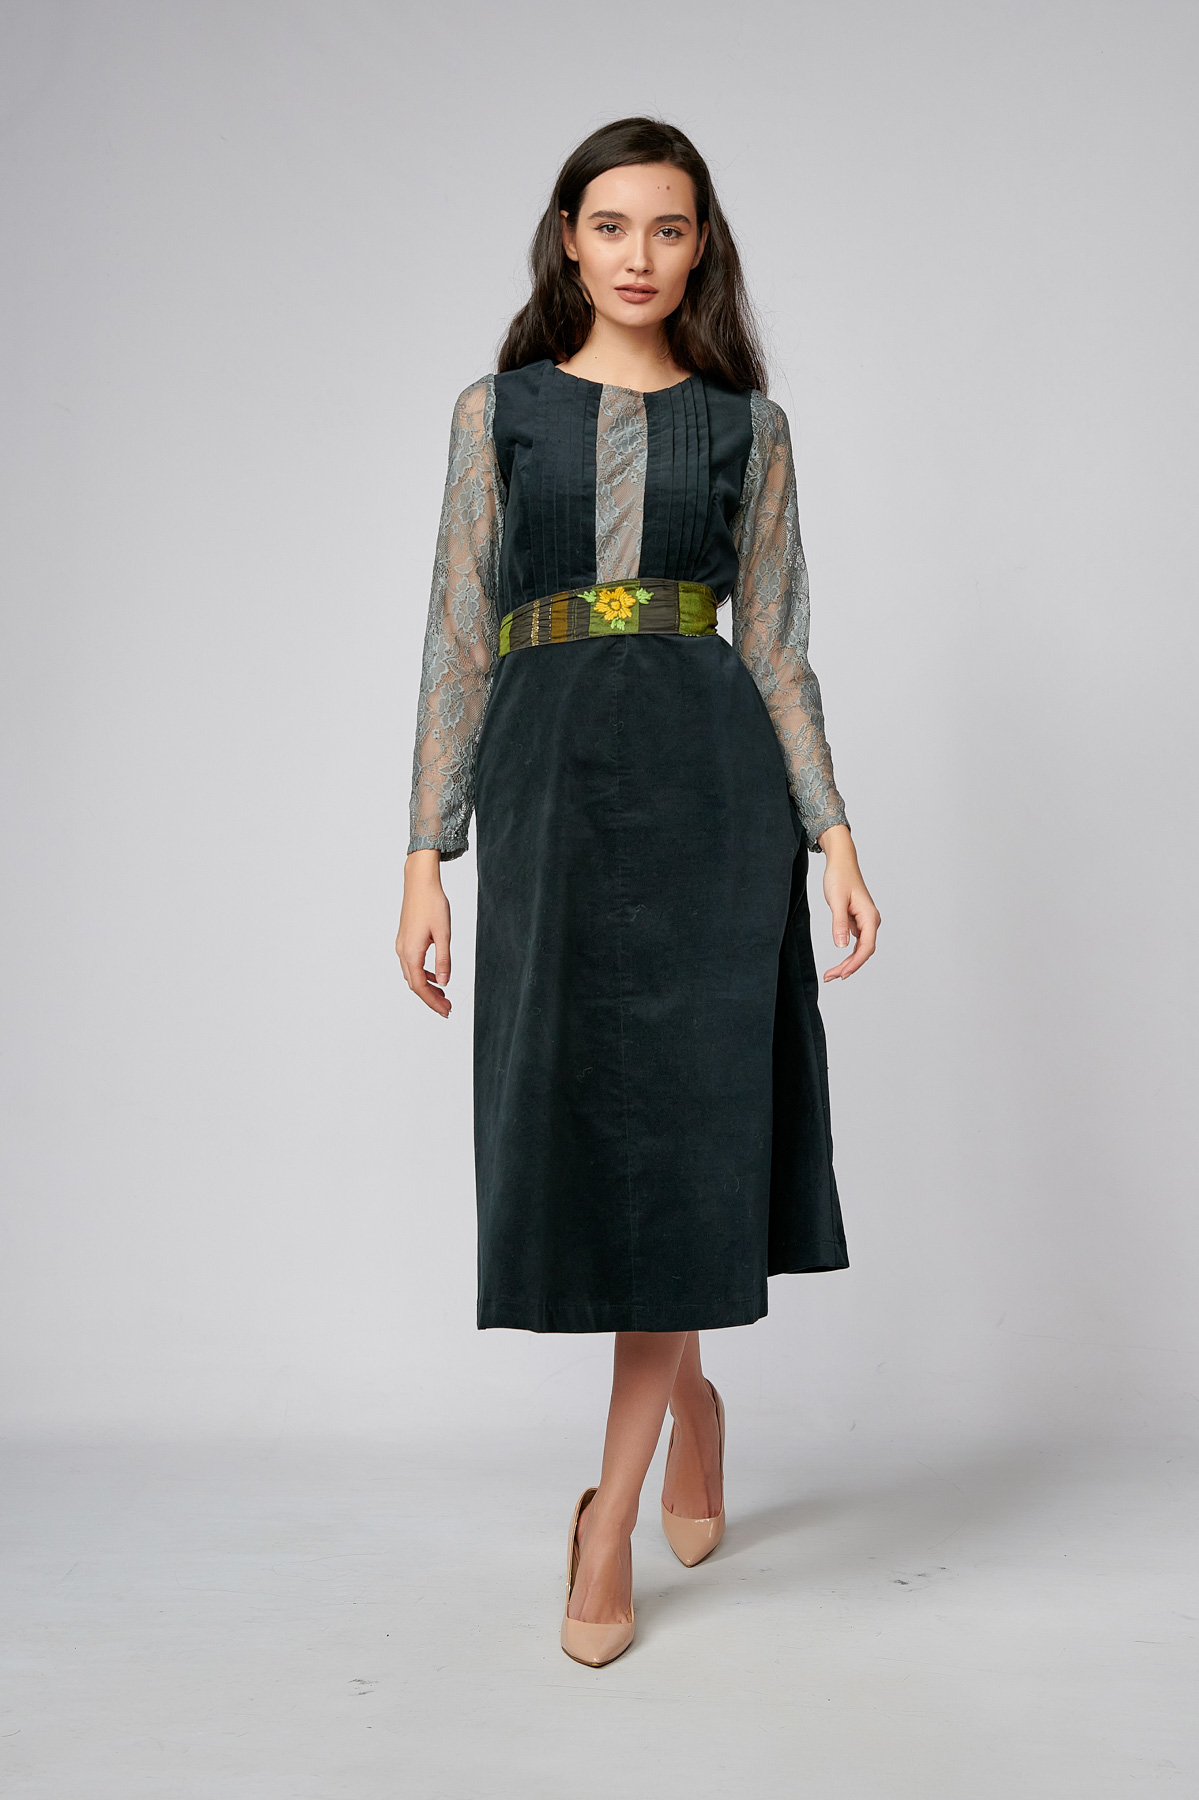 SONORA V Dress. Natural fabrics, original design, handmade embroidery